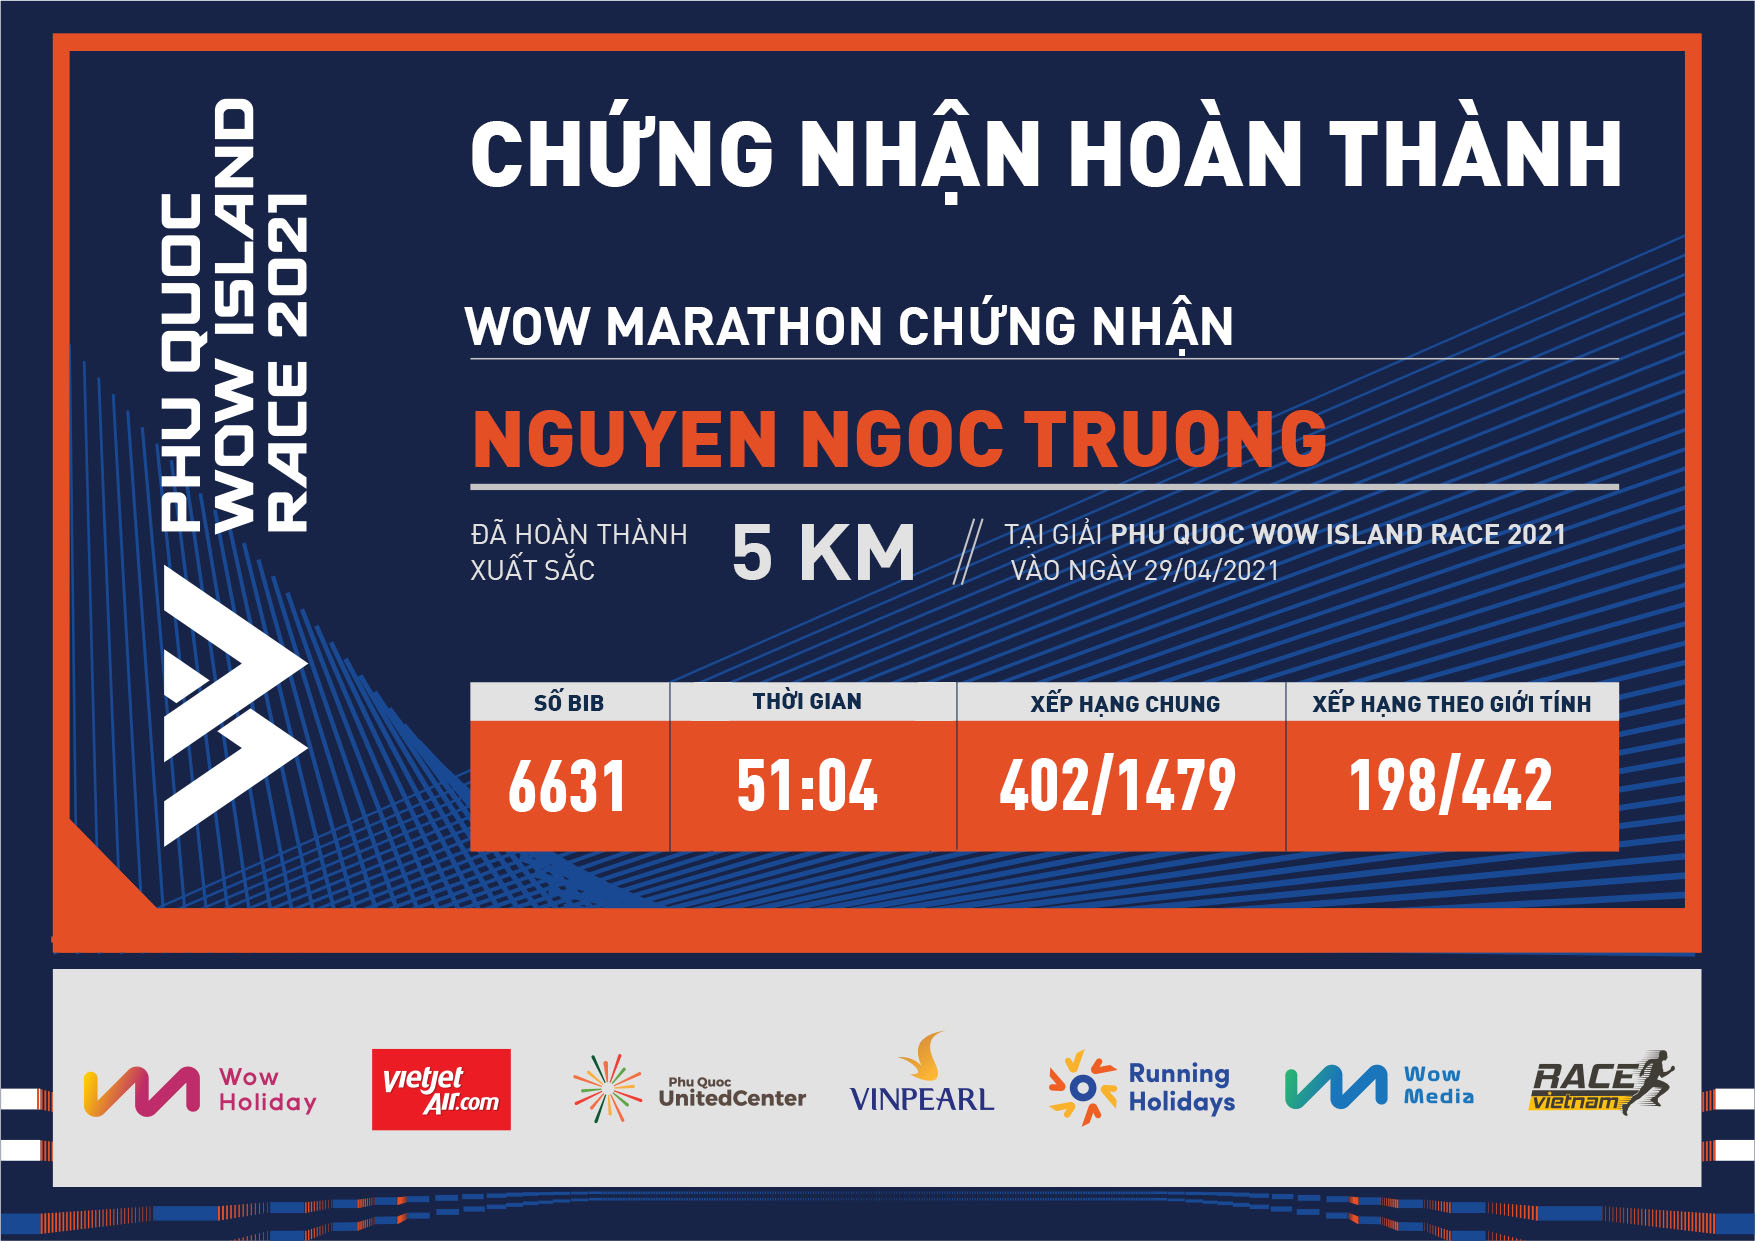 6631 - Nguyen Ngoc Truong